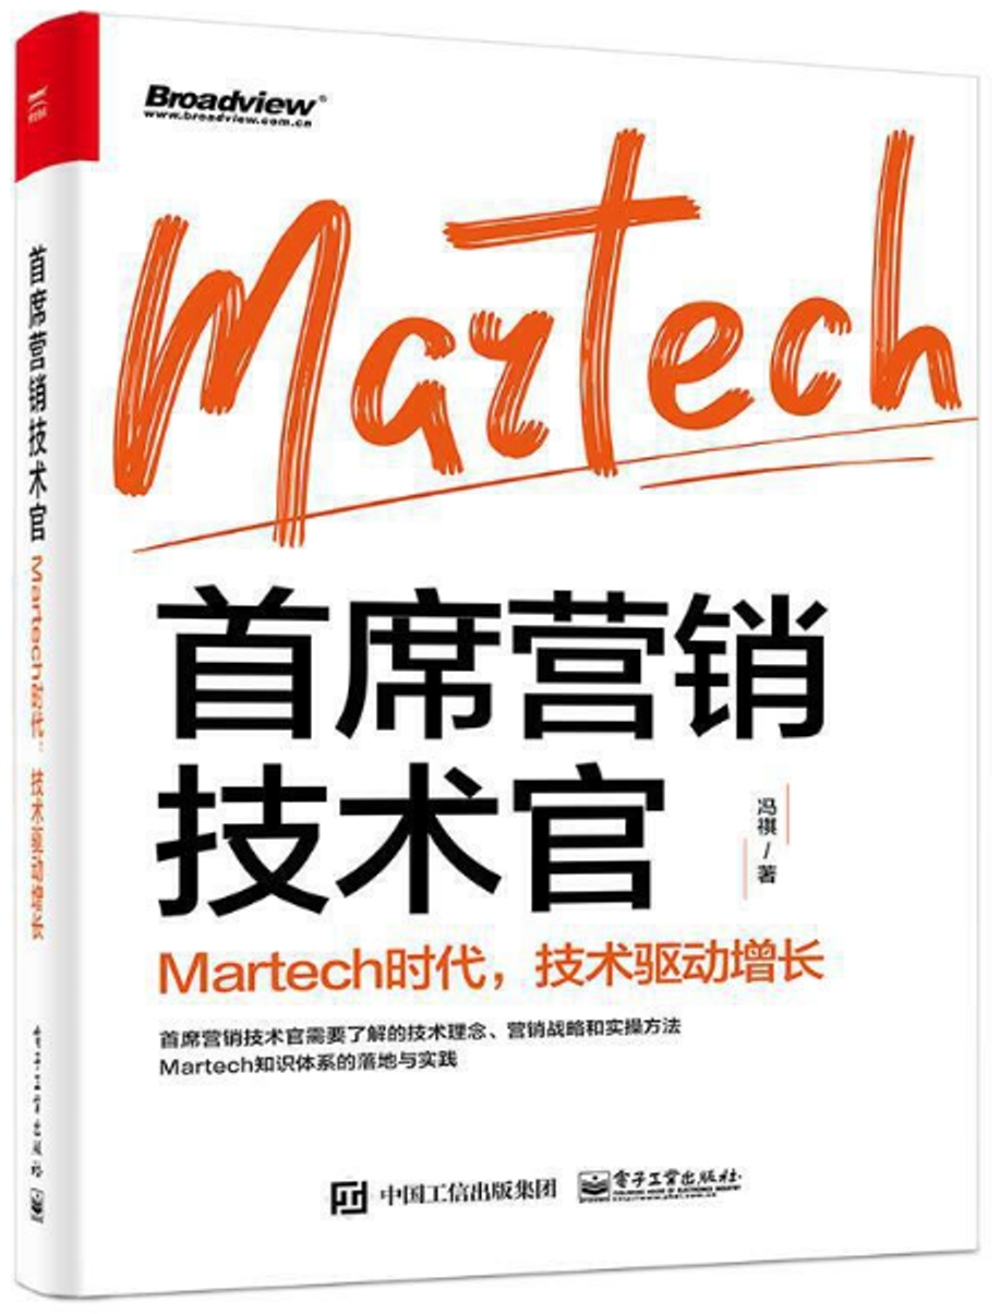 首席營銷技術官：Martech時代，技術驅動增長